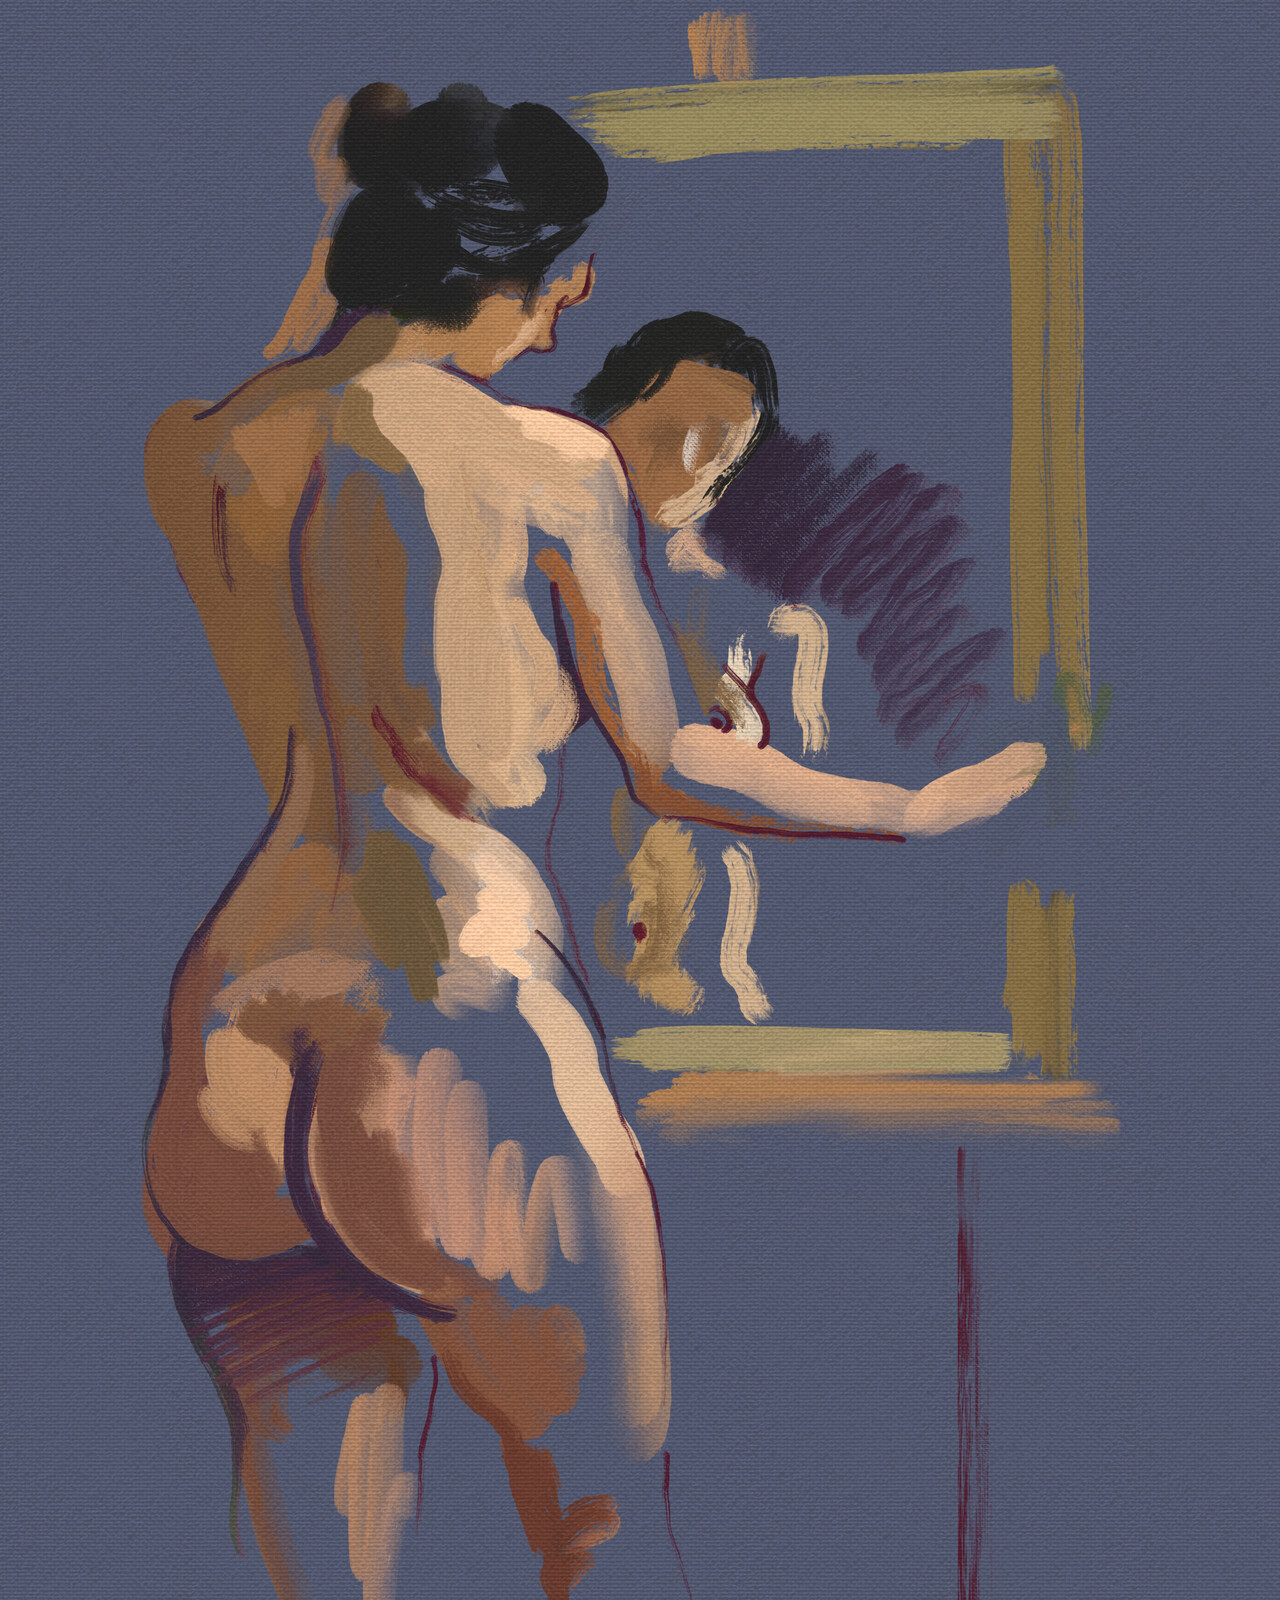 Nude sketch